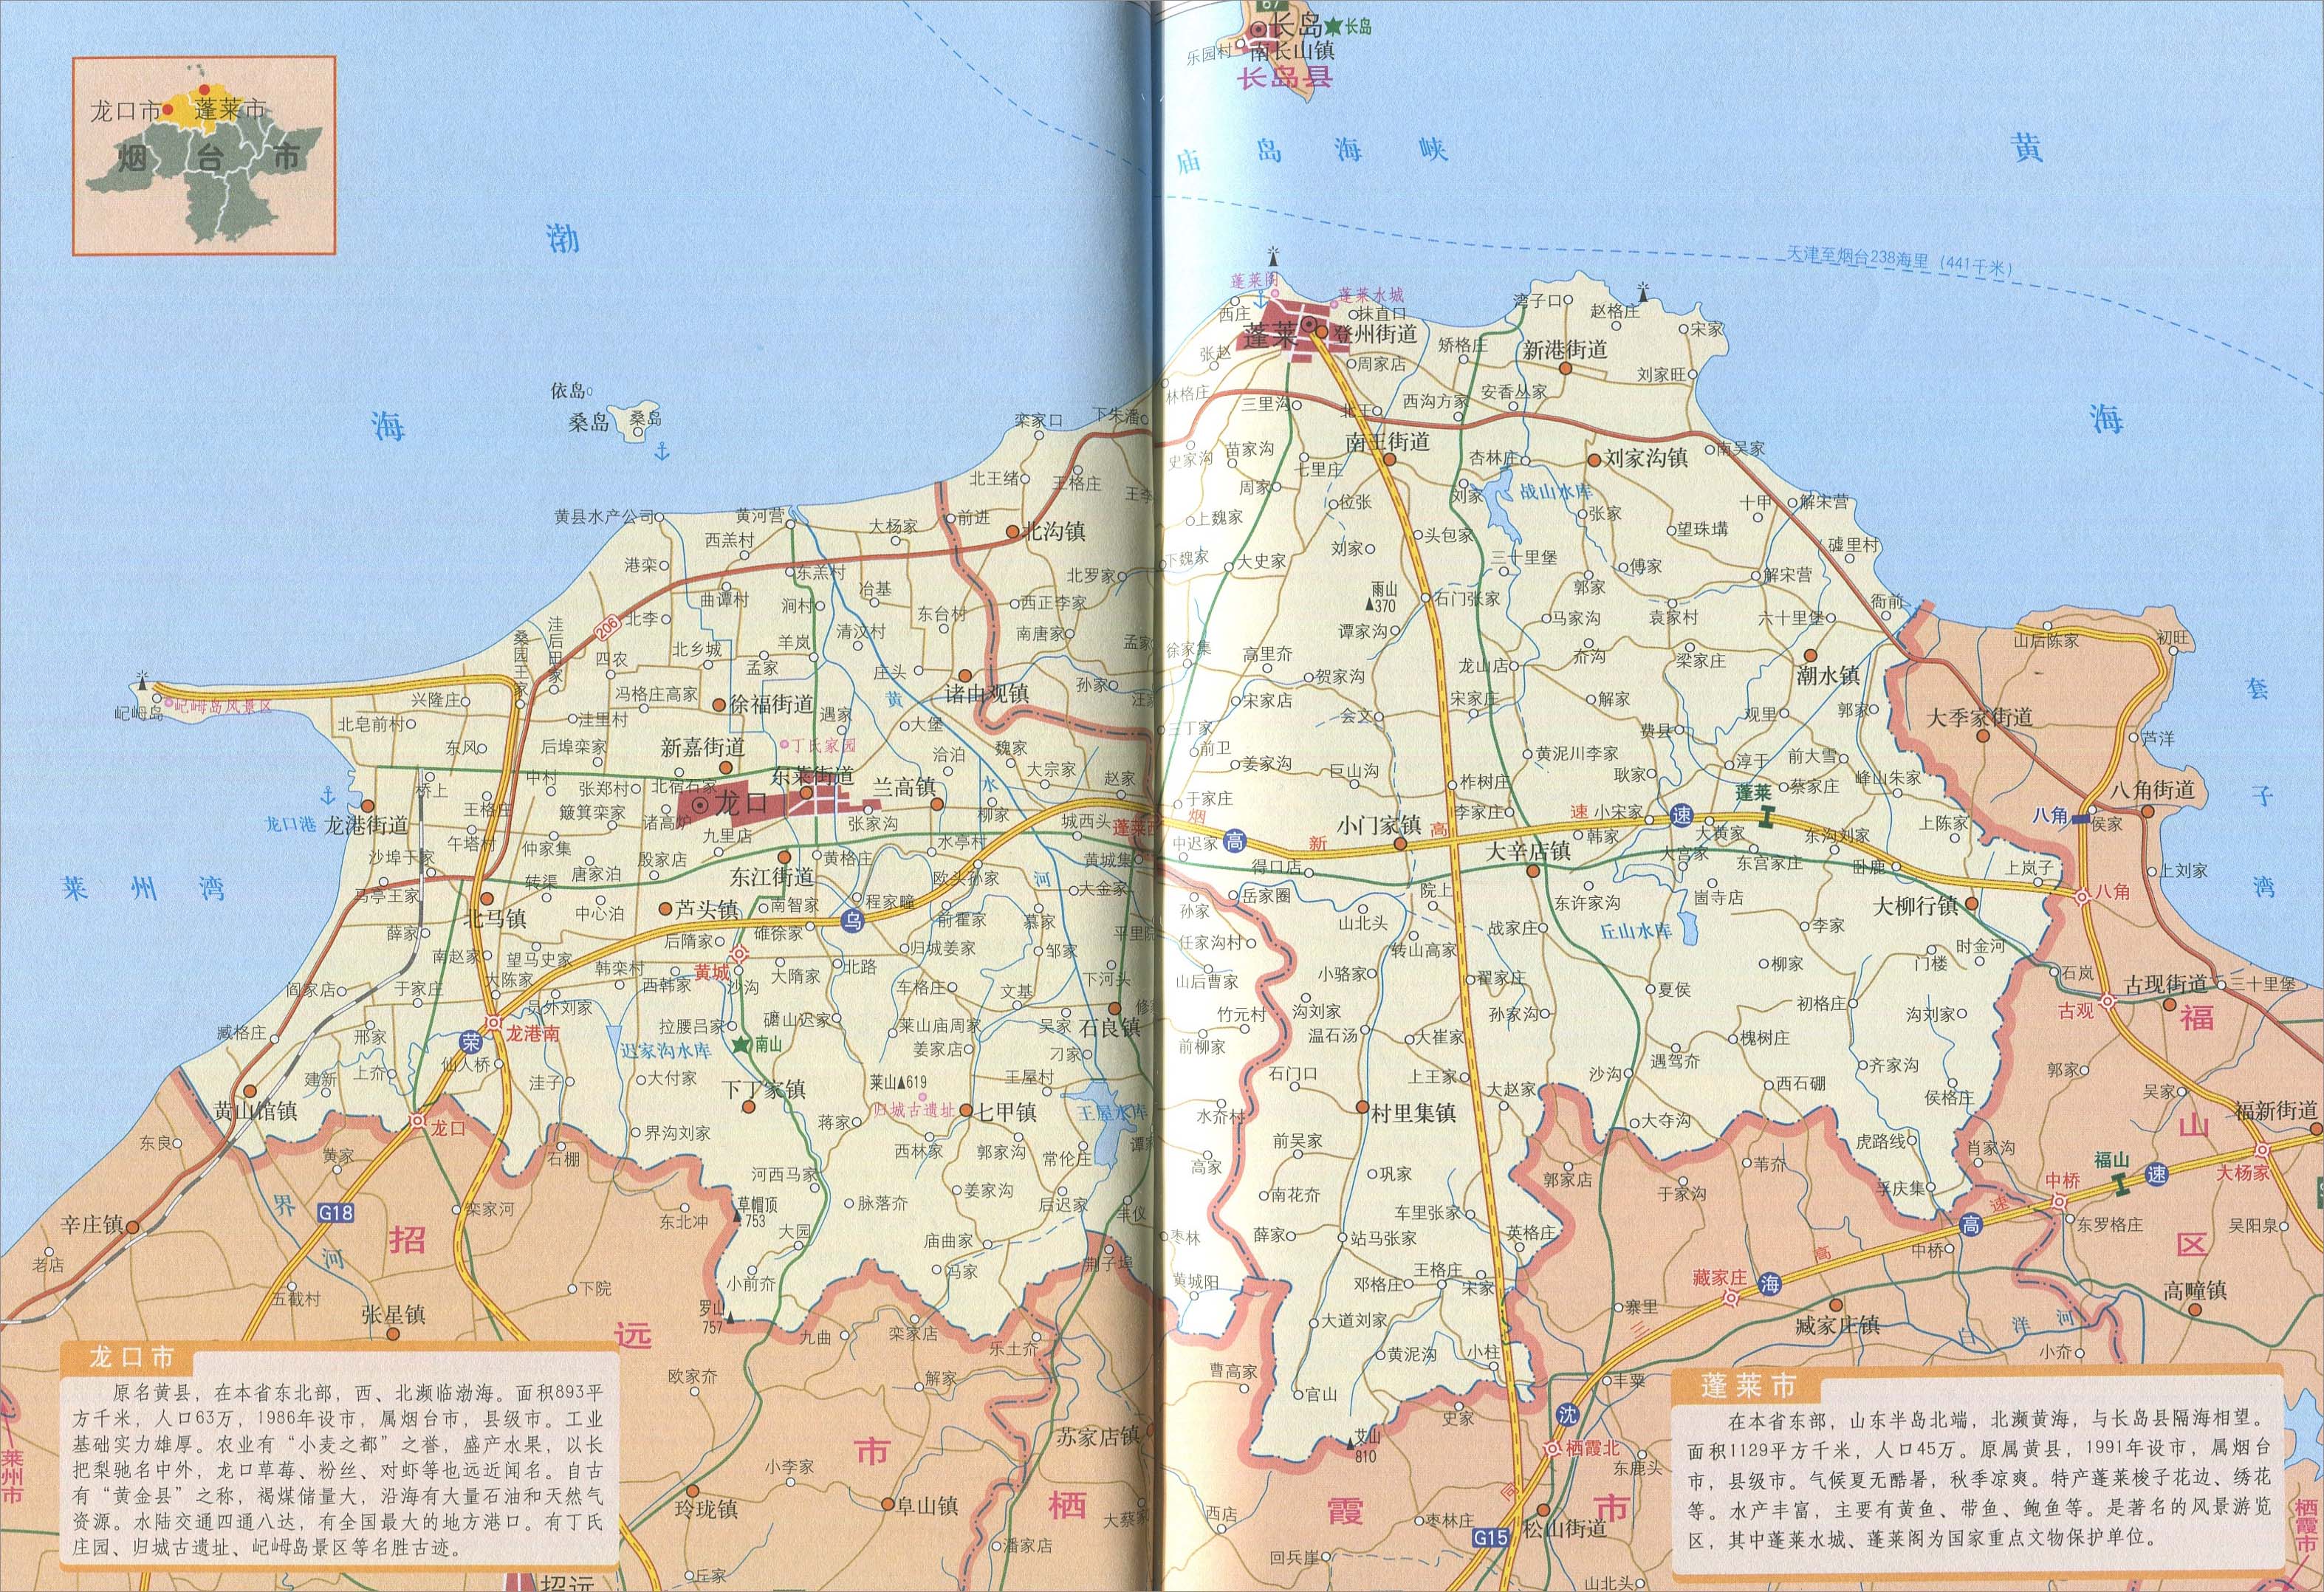 蓬莱市地图 蓬莱行政区划图